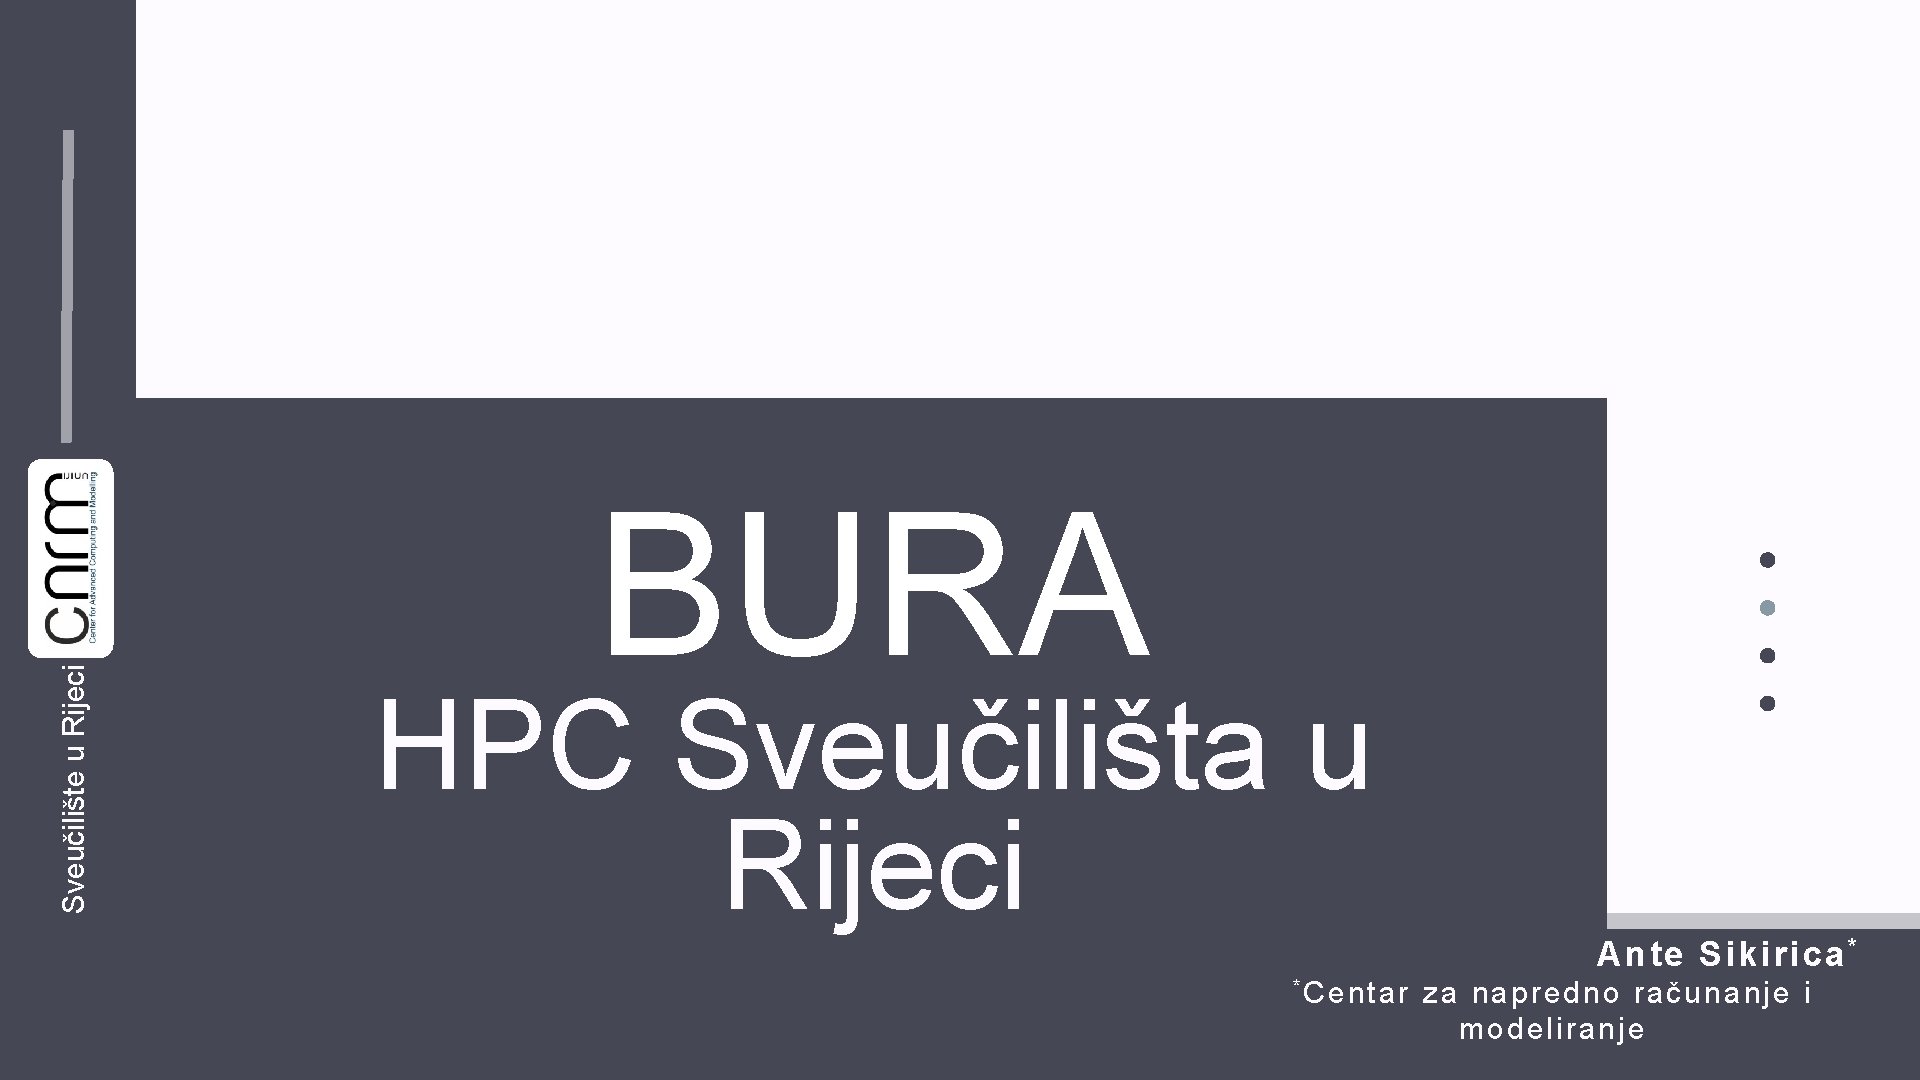 Sveučilište u Rijeci / BURA HPC Sveučilišta u Rijeci * Centar Ante Sikirica *